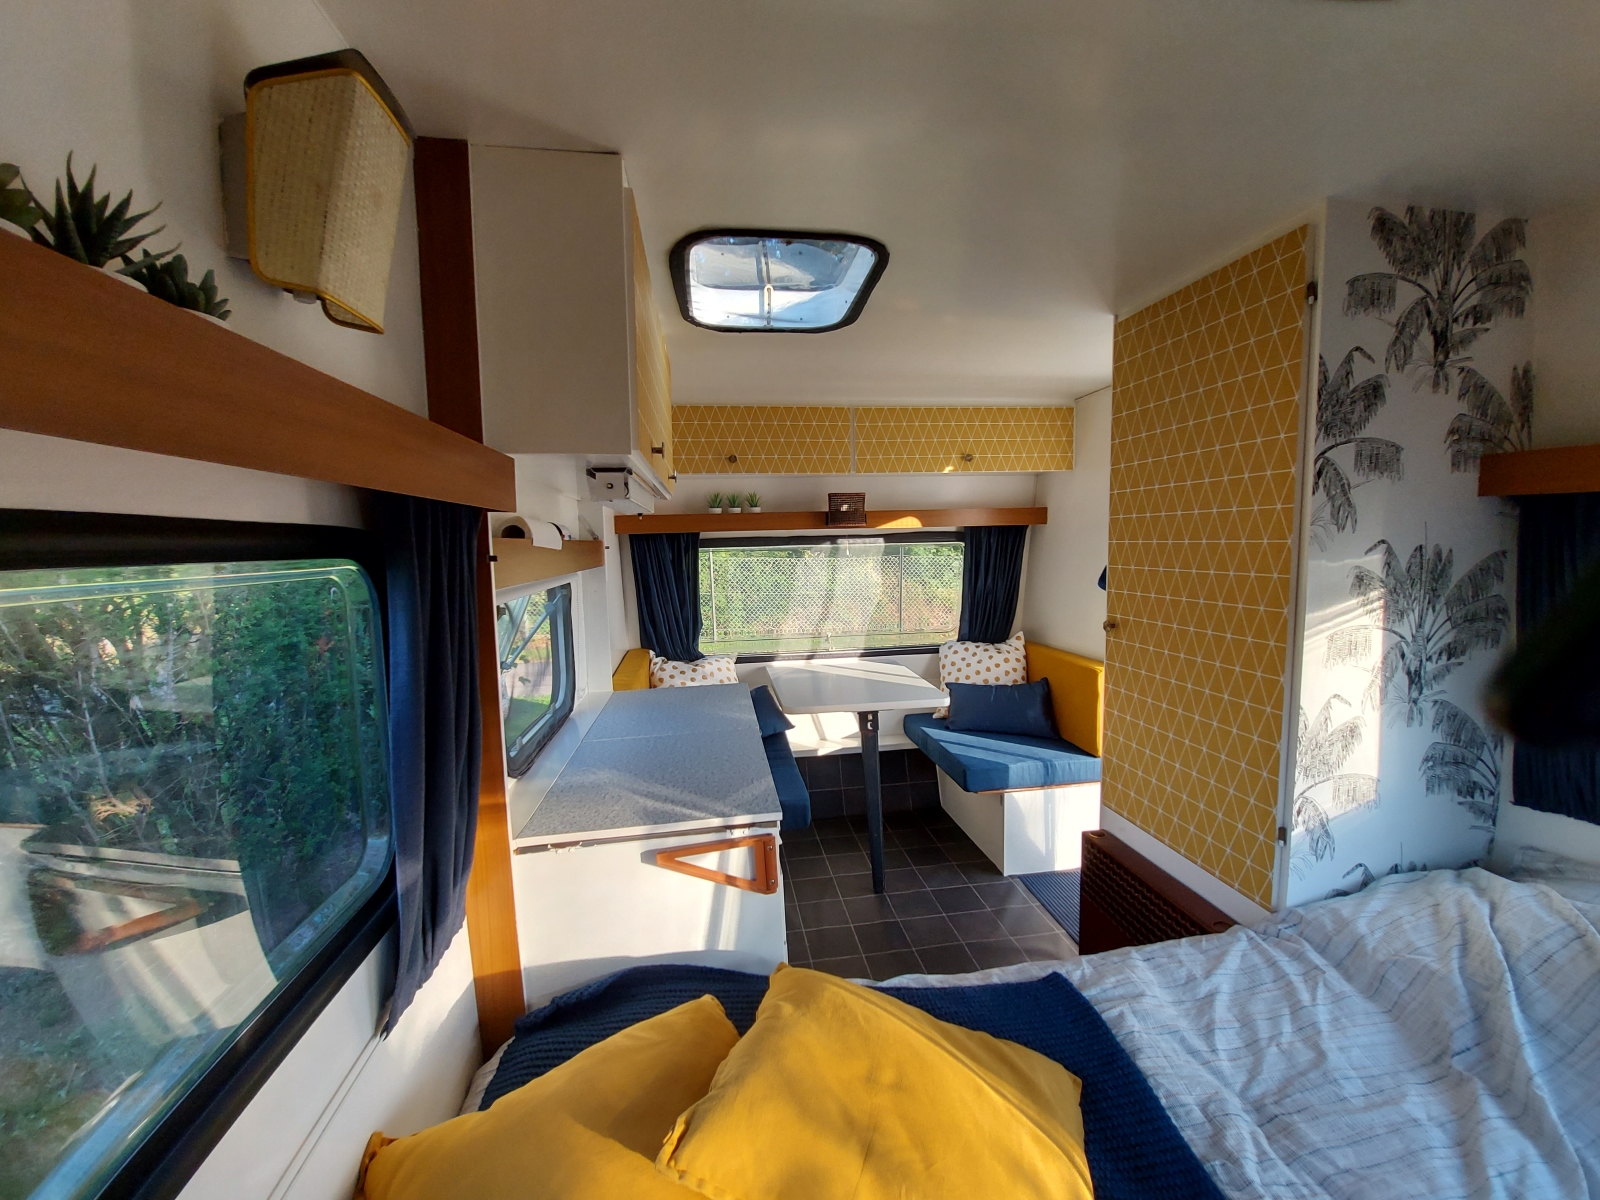 Buitensporig Snoep Vallen DIY: Je caravan behangen - Caravanity | happy campers lifestyle